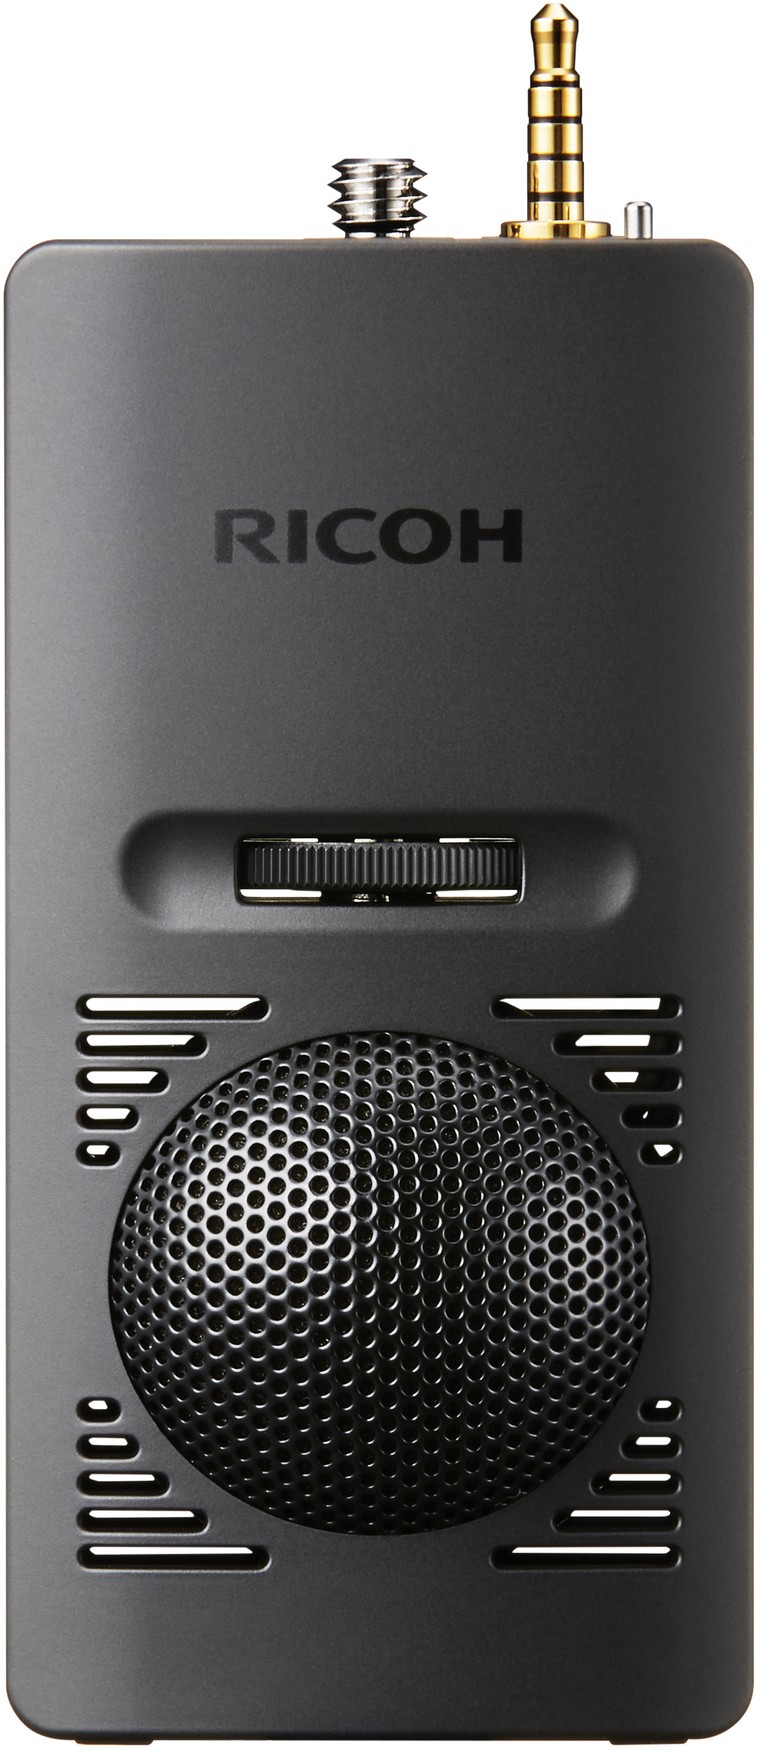 Ricoh Theta 3D mikrofon TA-1